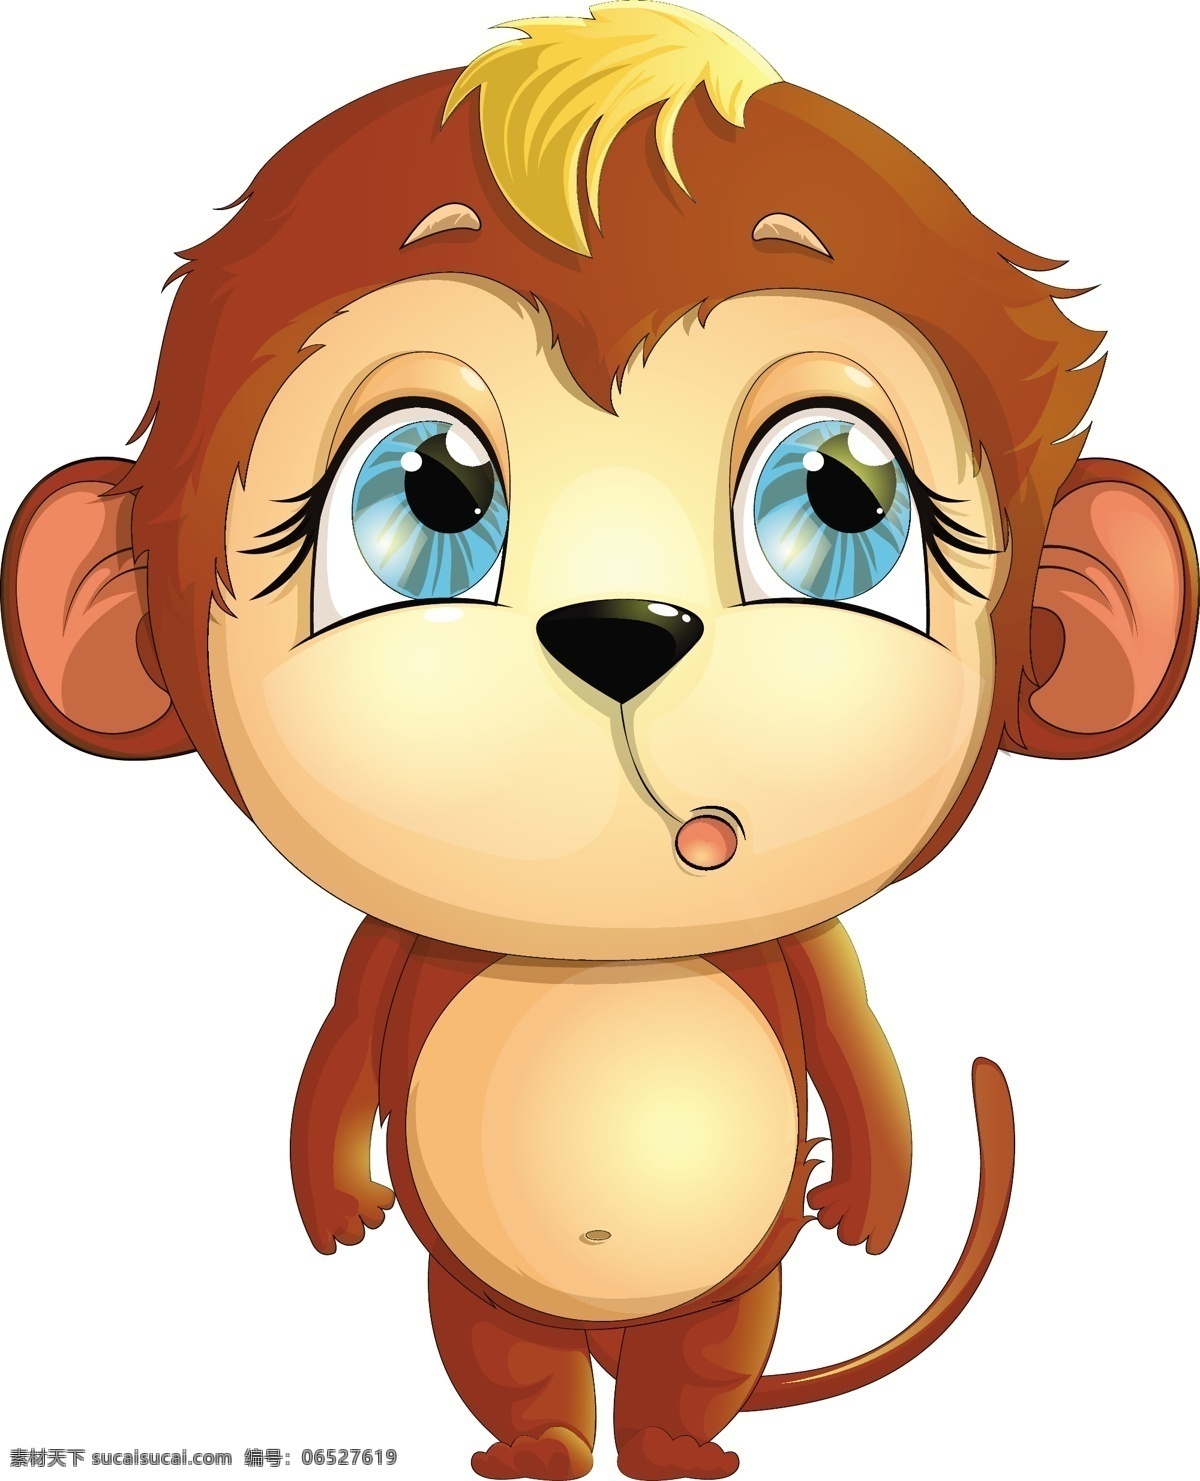 卡通猴子 卡通动物 卡通 动物 猴子 矢量素材 矢量 野生动物 生物世界